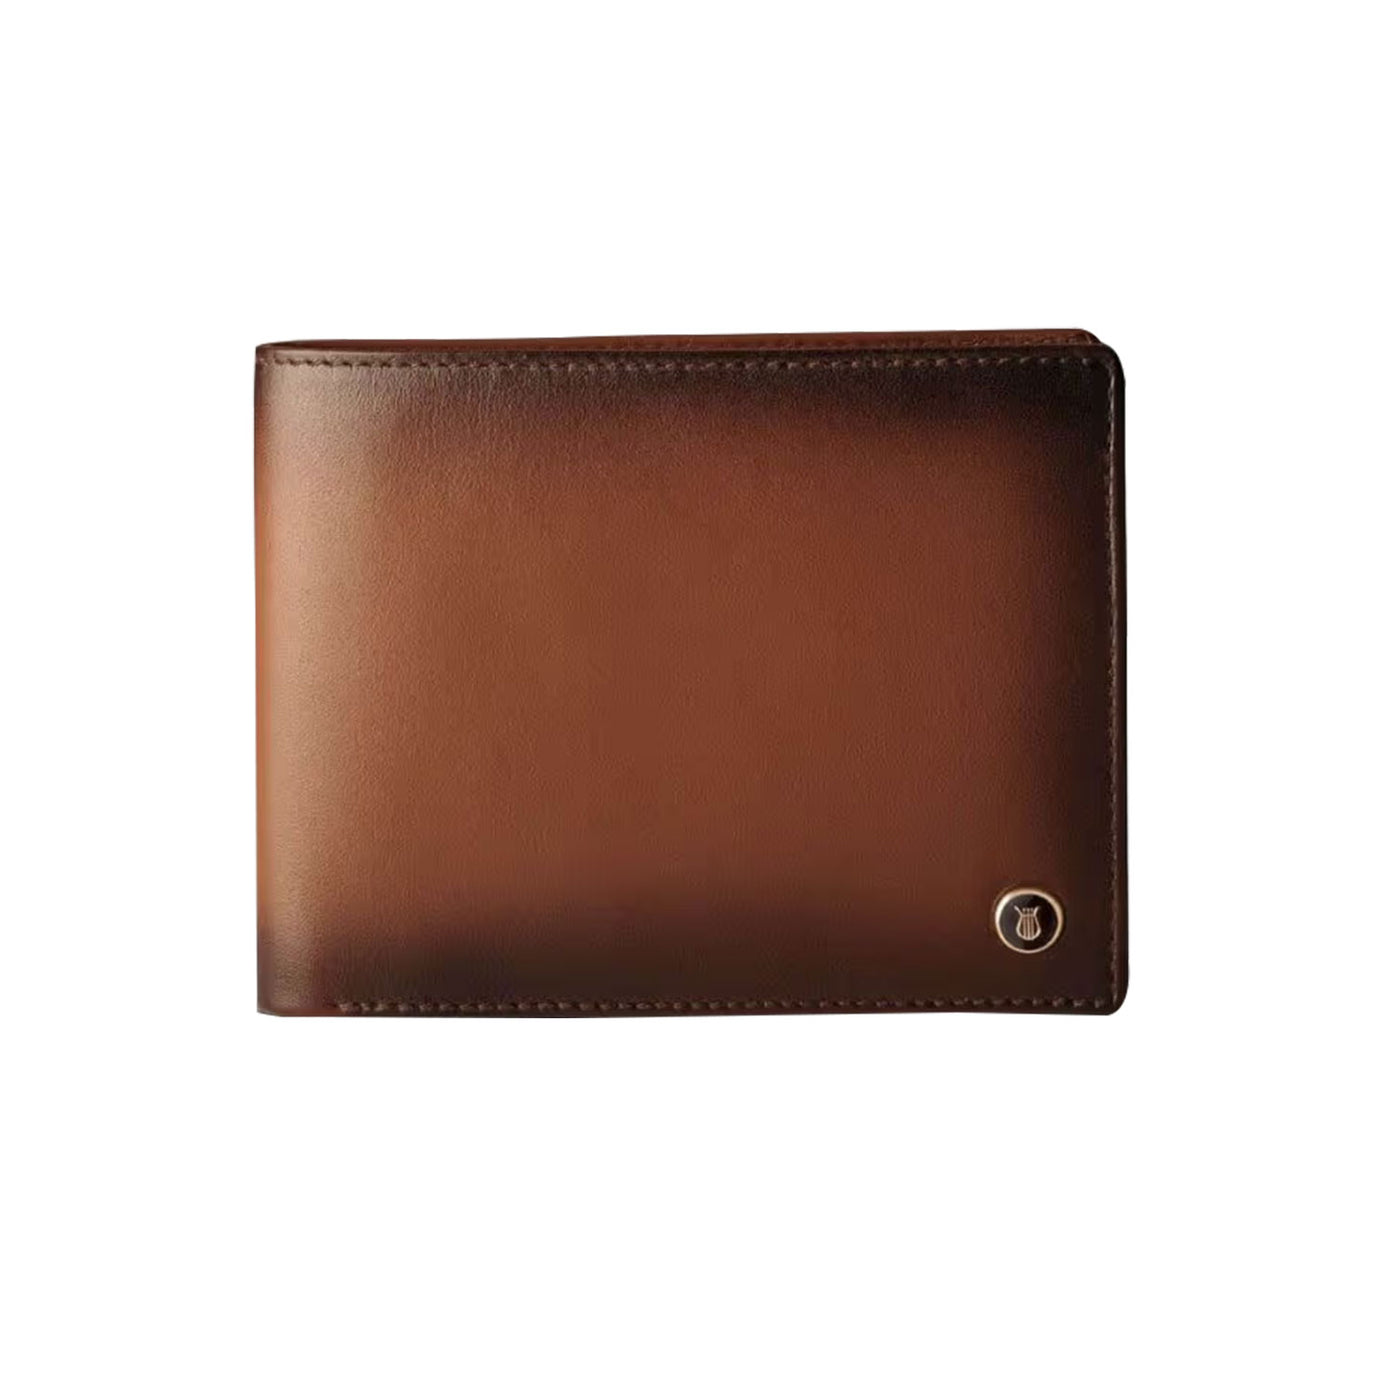 Lapis Bard Ducorium Bifold 3cc Wallet with Coin Pocket - Cognac 1